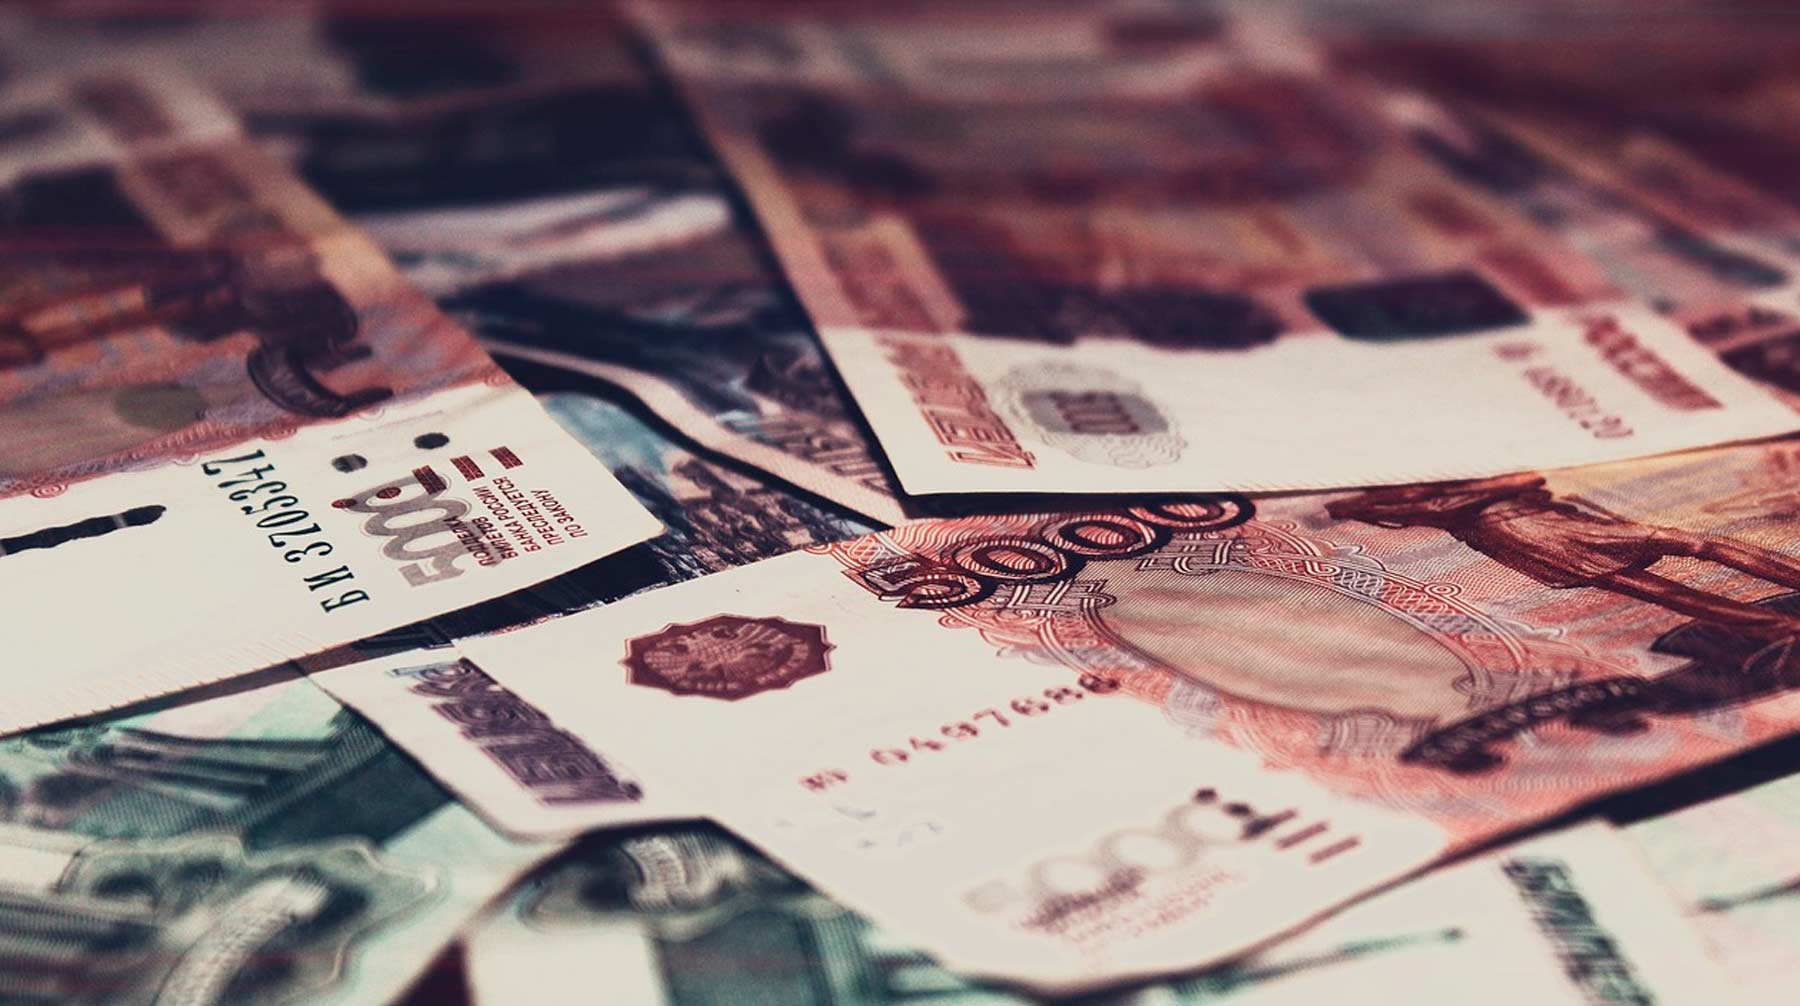 Организаторов операции по отмыванию денег объявили в международный розыск и заочно арестовали Фото: © pixabay.com